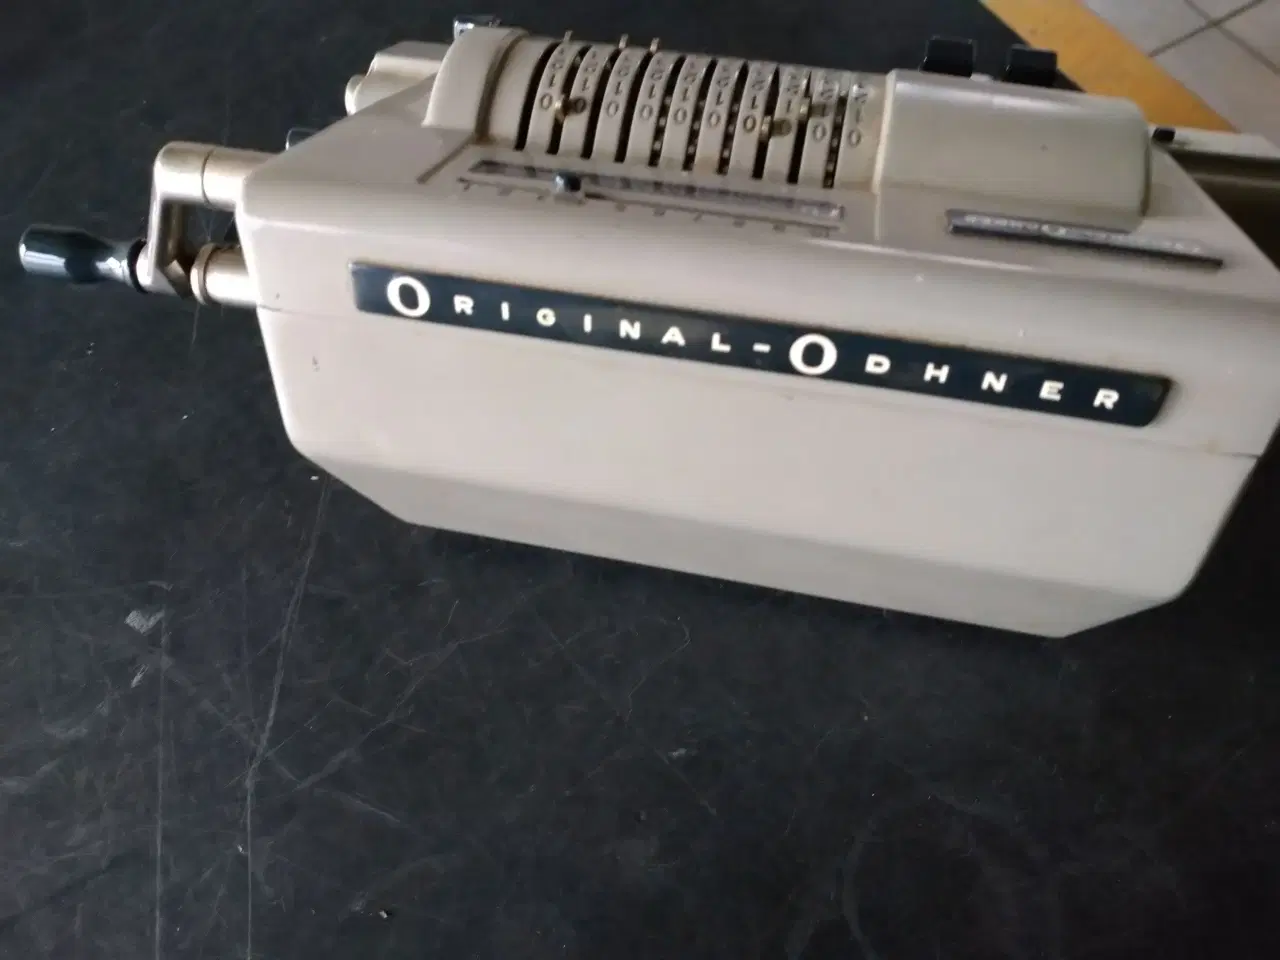 Billede 1 - original-odhner regnemaskine